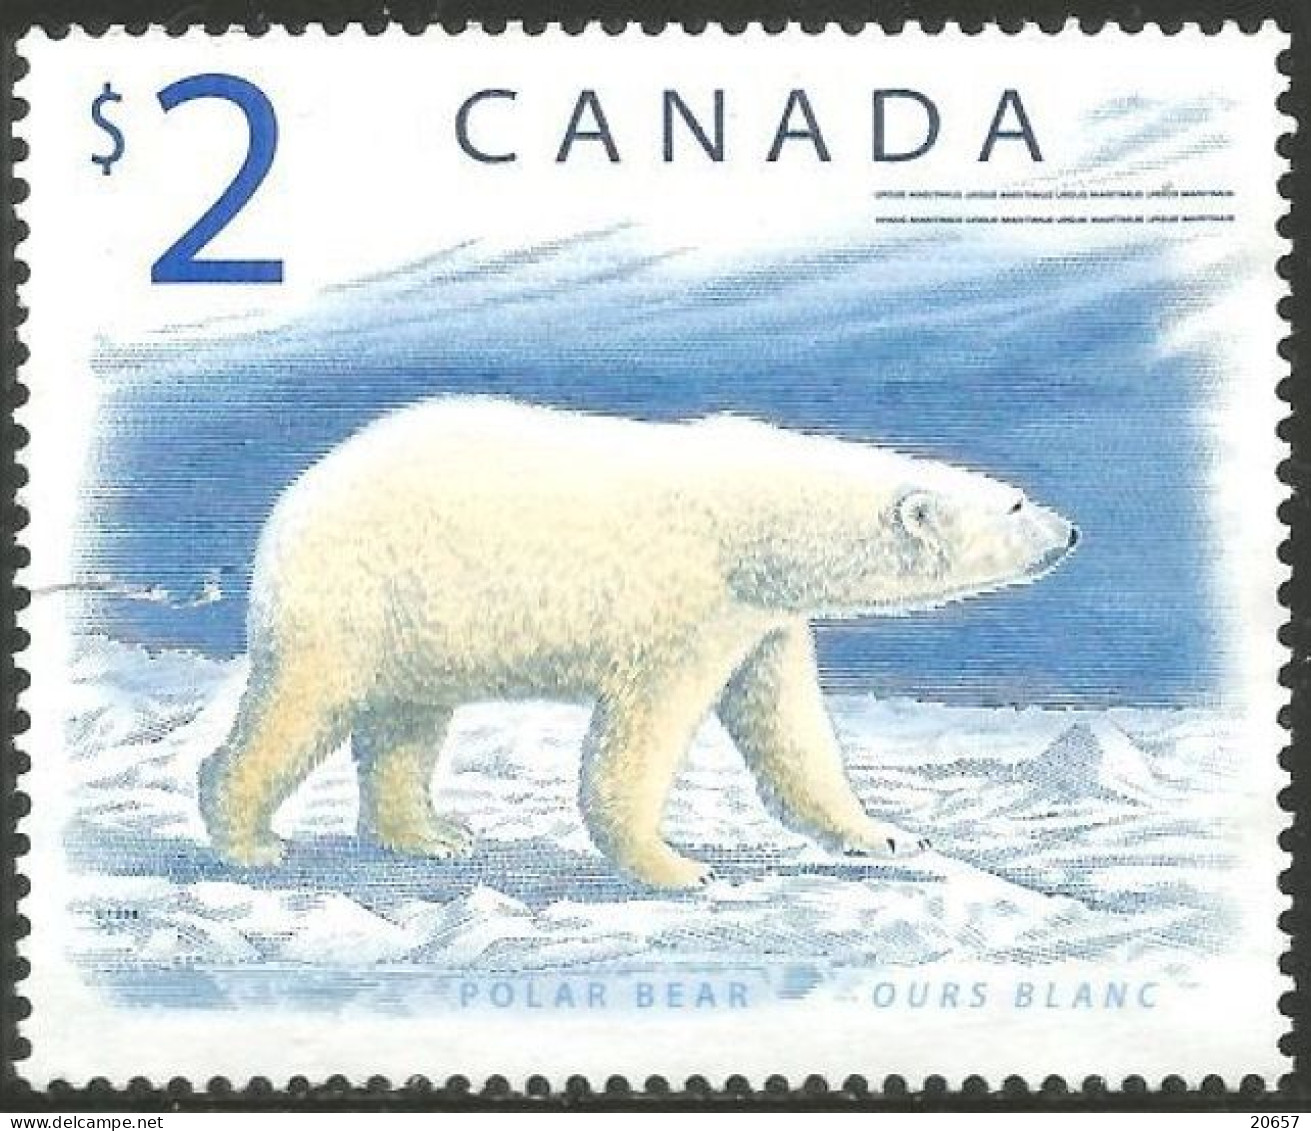 CANADA 1617 Ours Polaire Blanc, Polar Bear - Arctic Wildlife